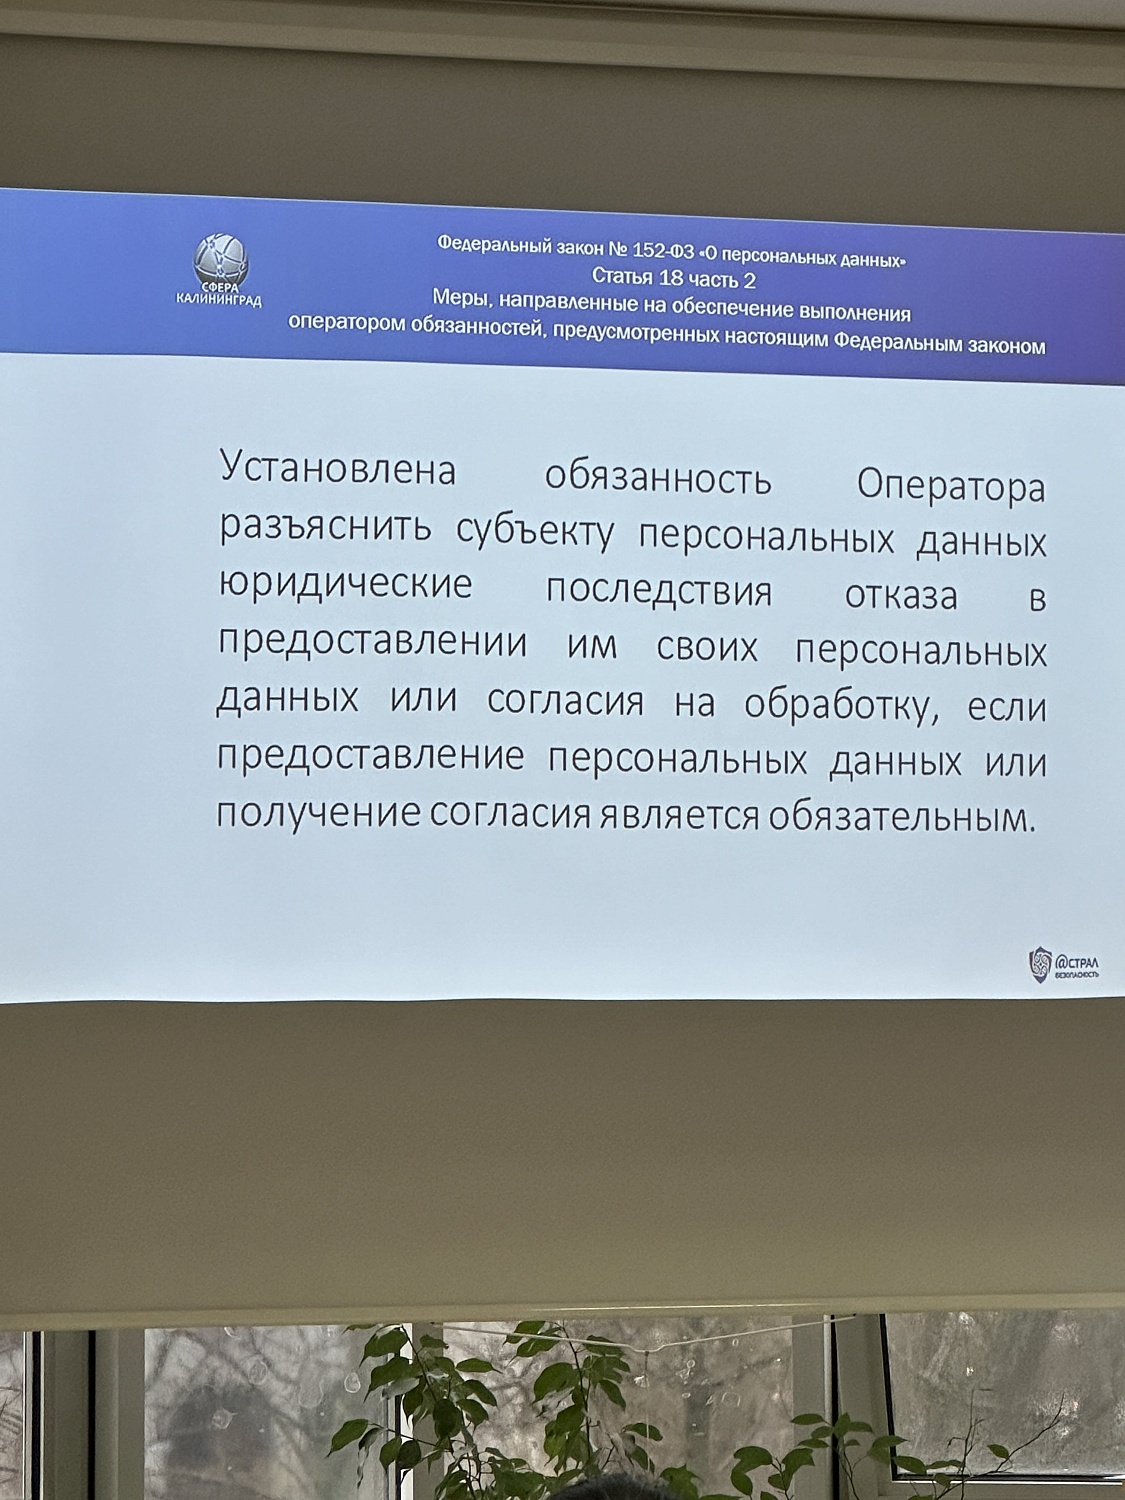 Семинар «Защита информации и персональных данных» для спортивных организаций и учреждений Калининградской области